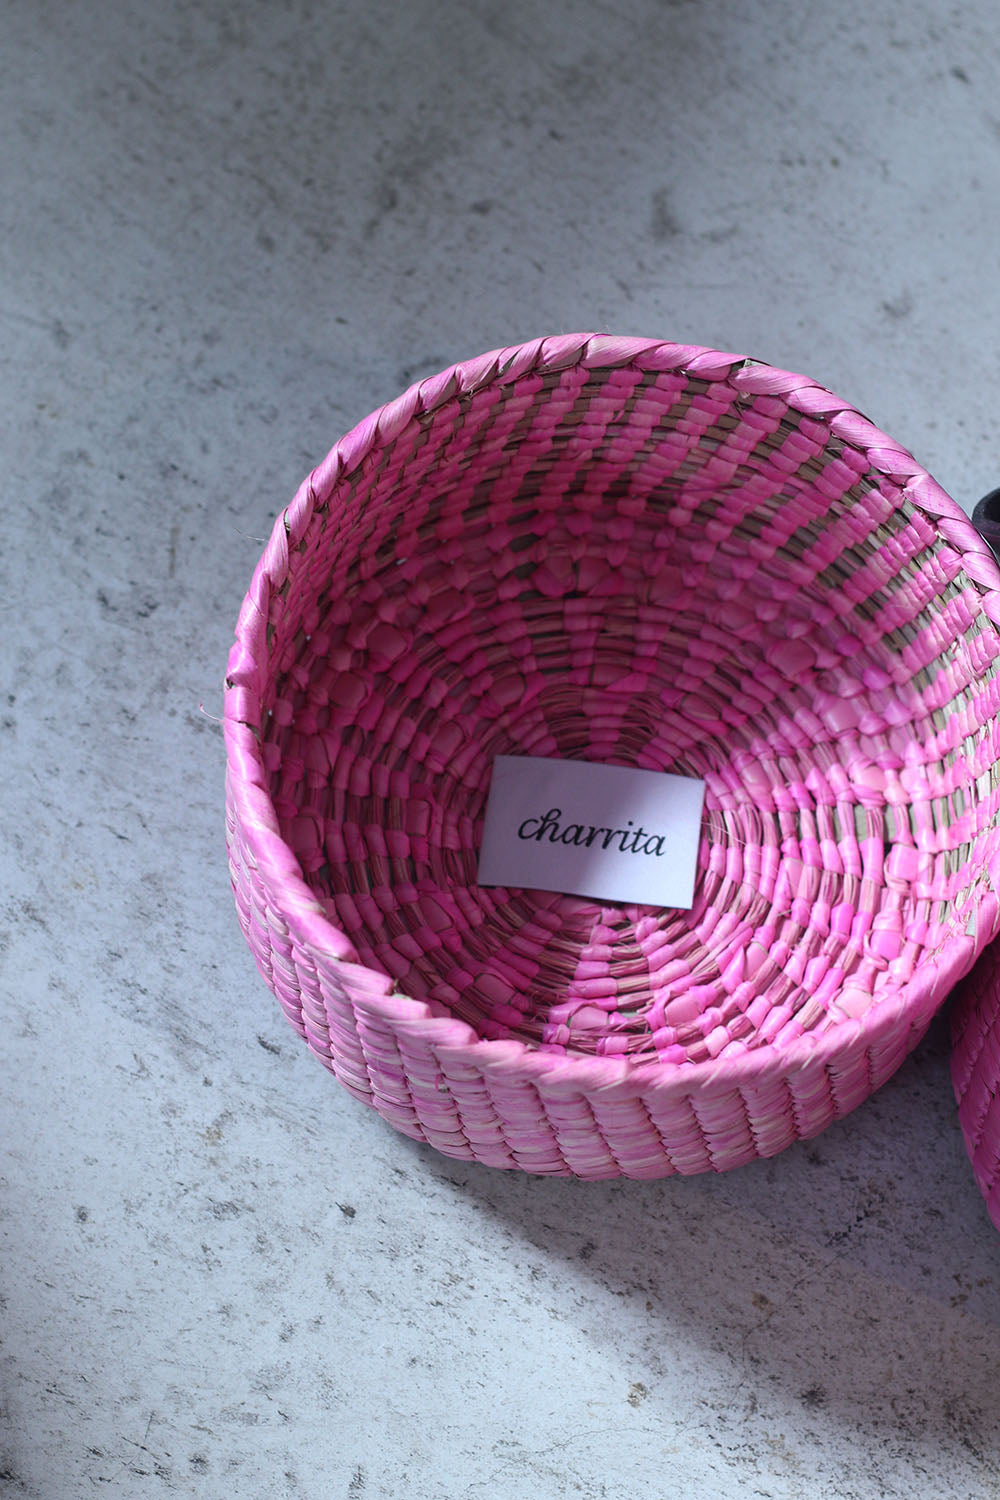 charrita "cesta larga" (pink)